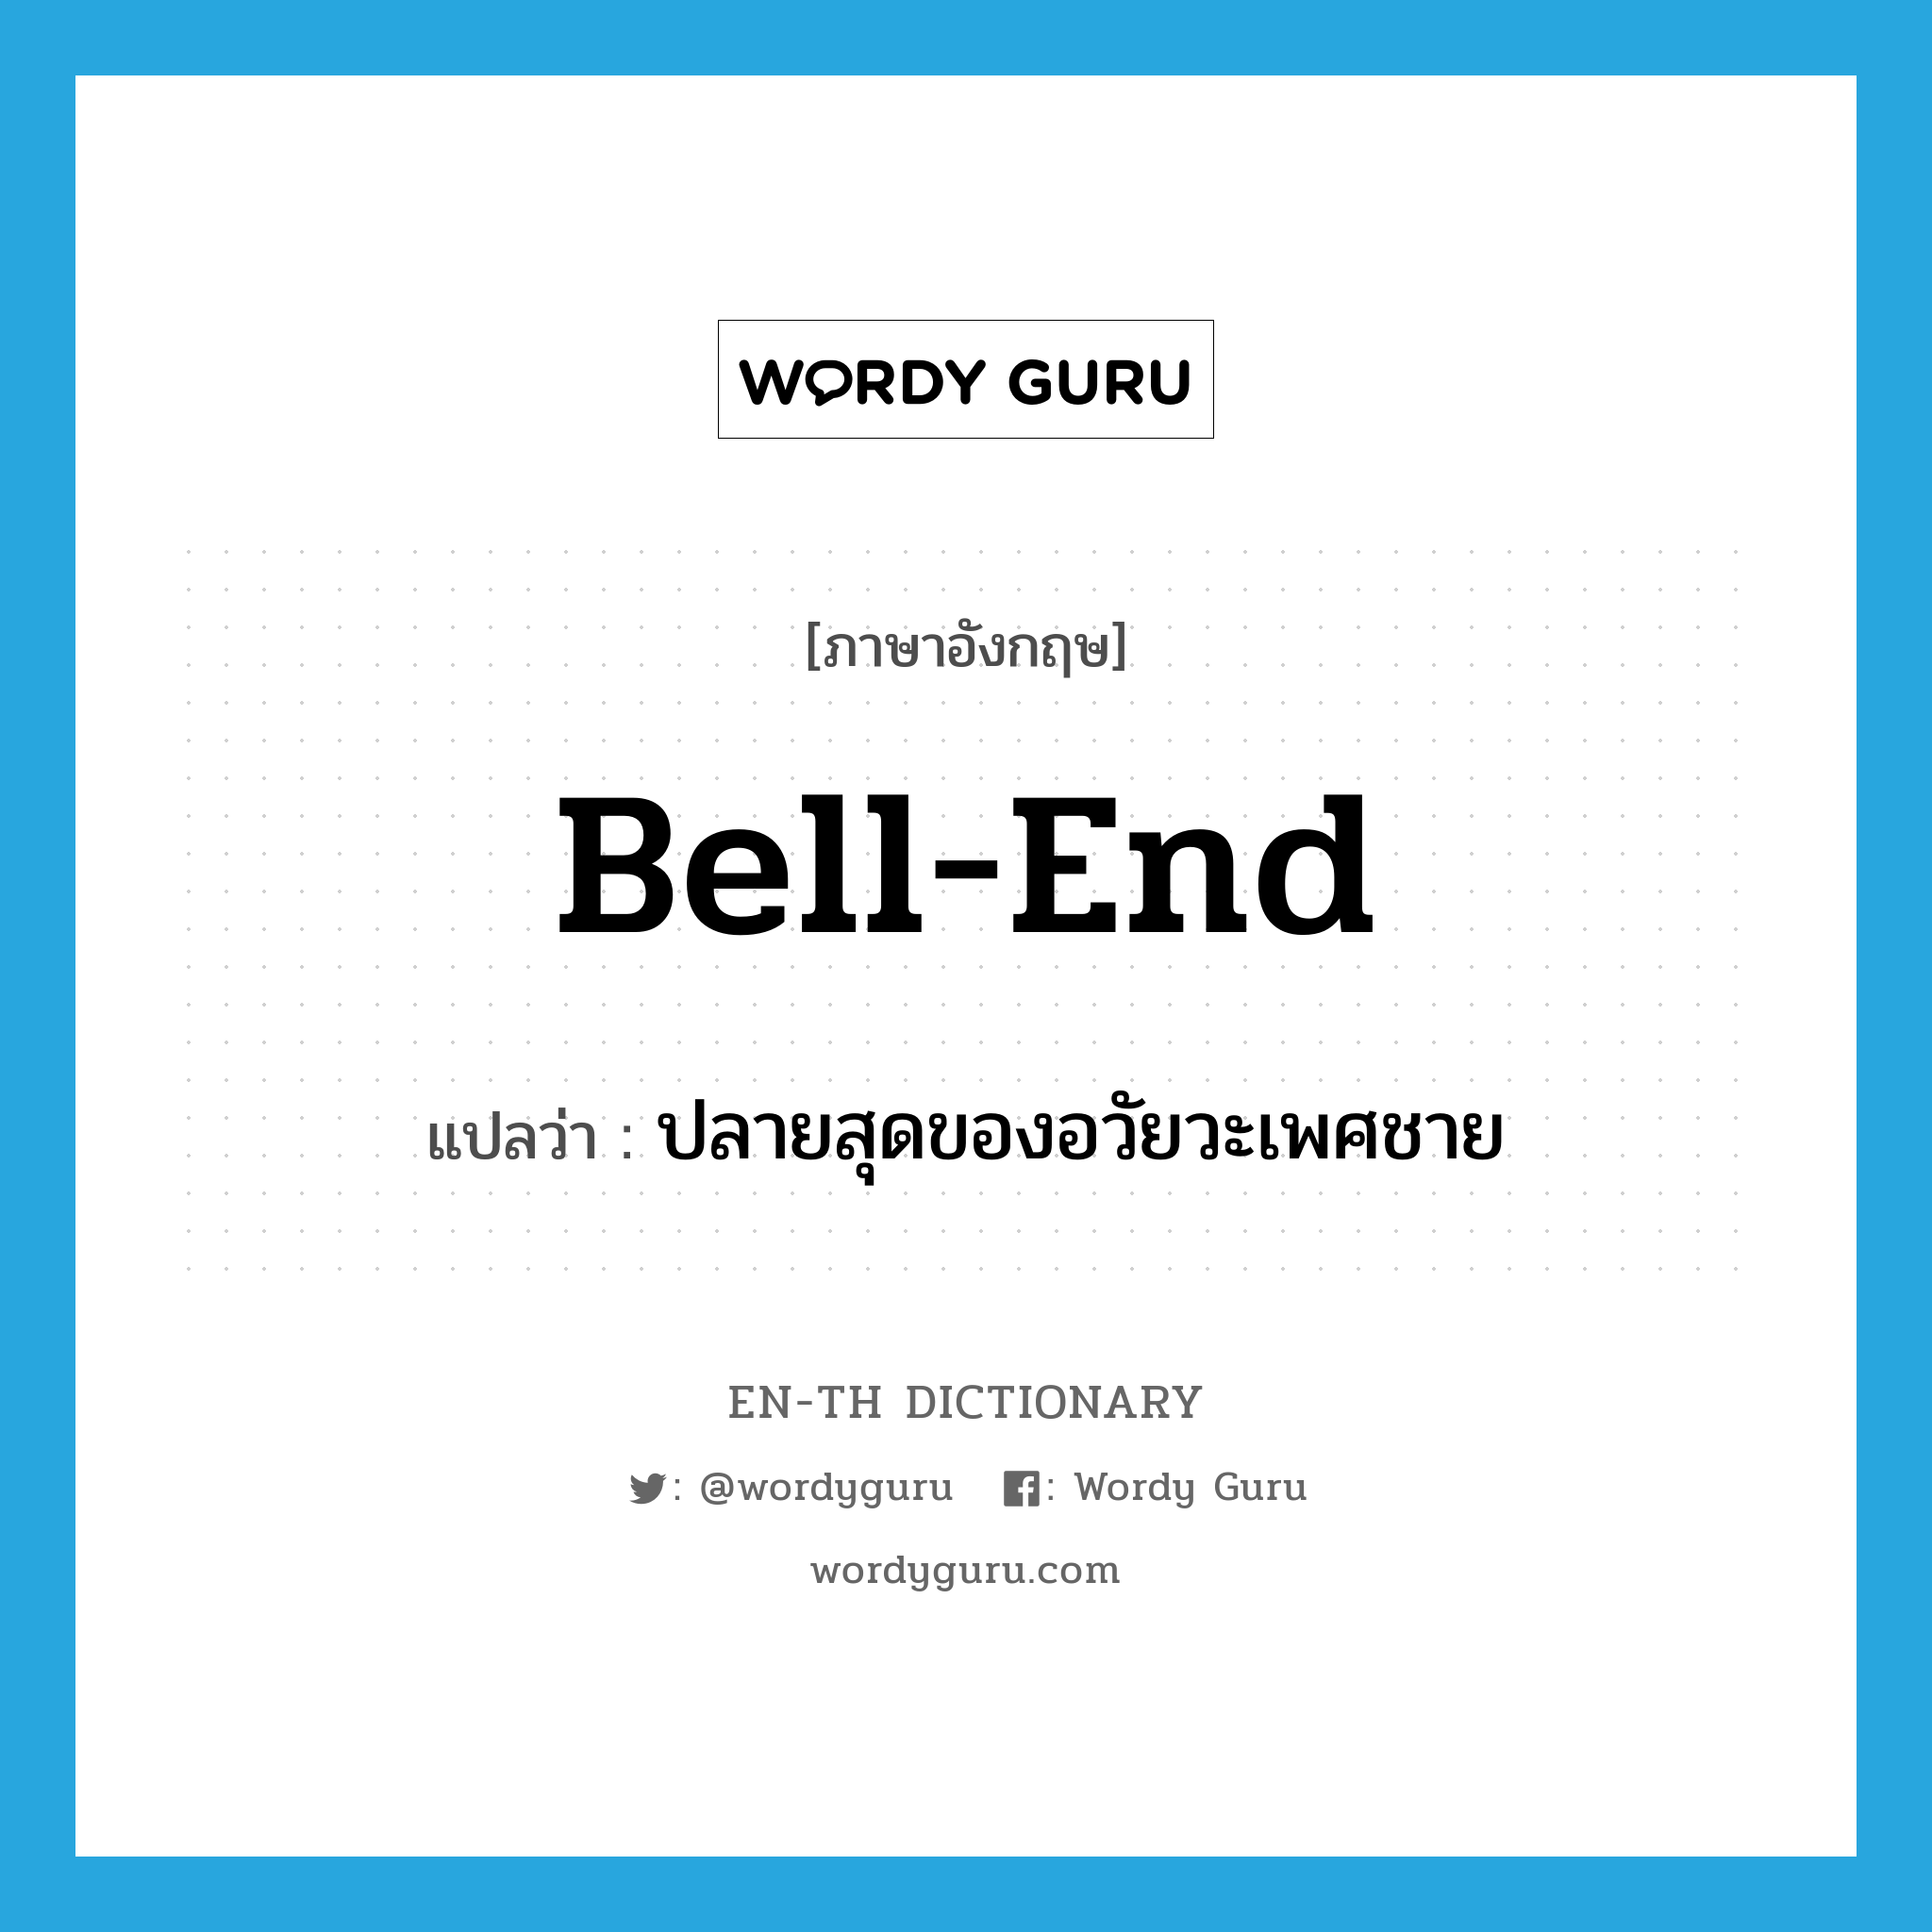 bell-end แปลว่า?, คำศัพท์ภาษาอังกฤษ bell-end แปลว่า ปลายสุดของอวัยวะเพศชาย ประเภท SL หมวด SL